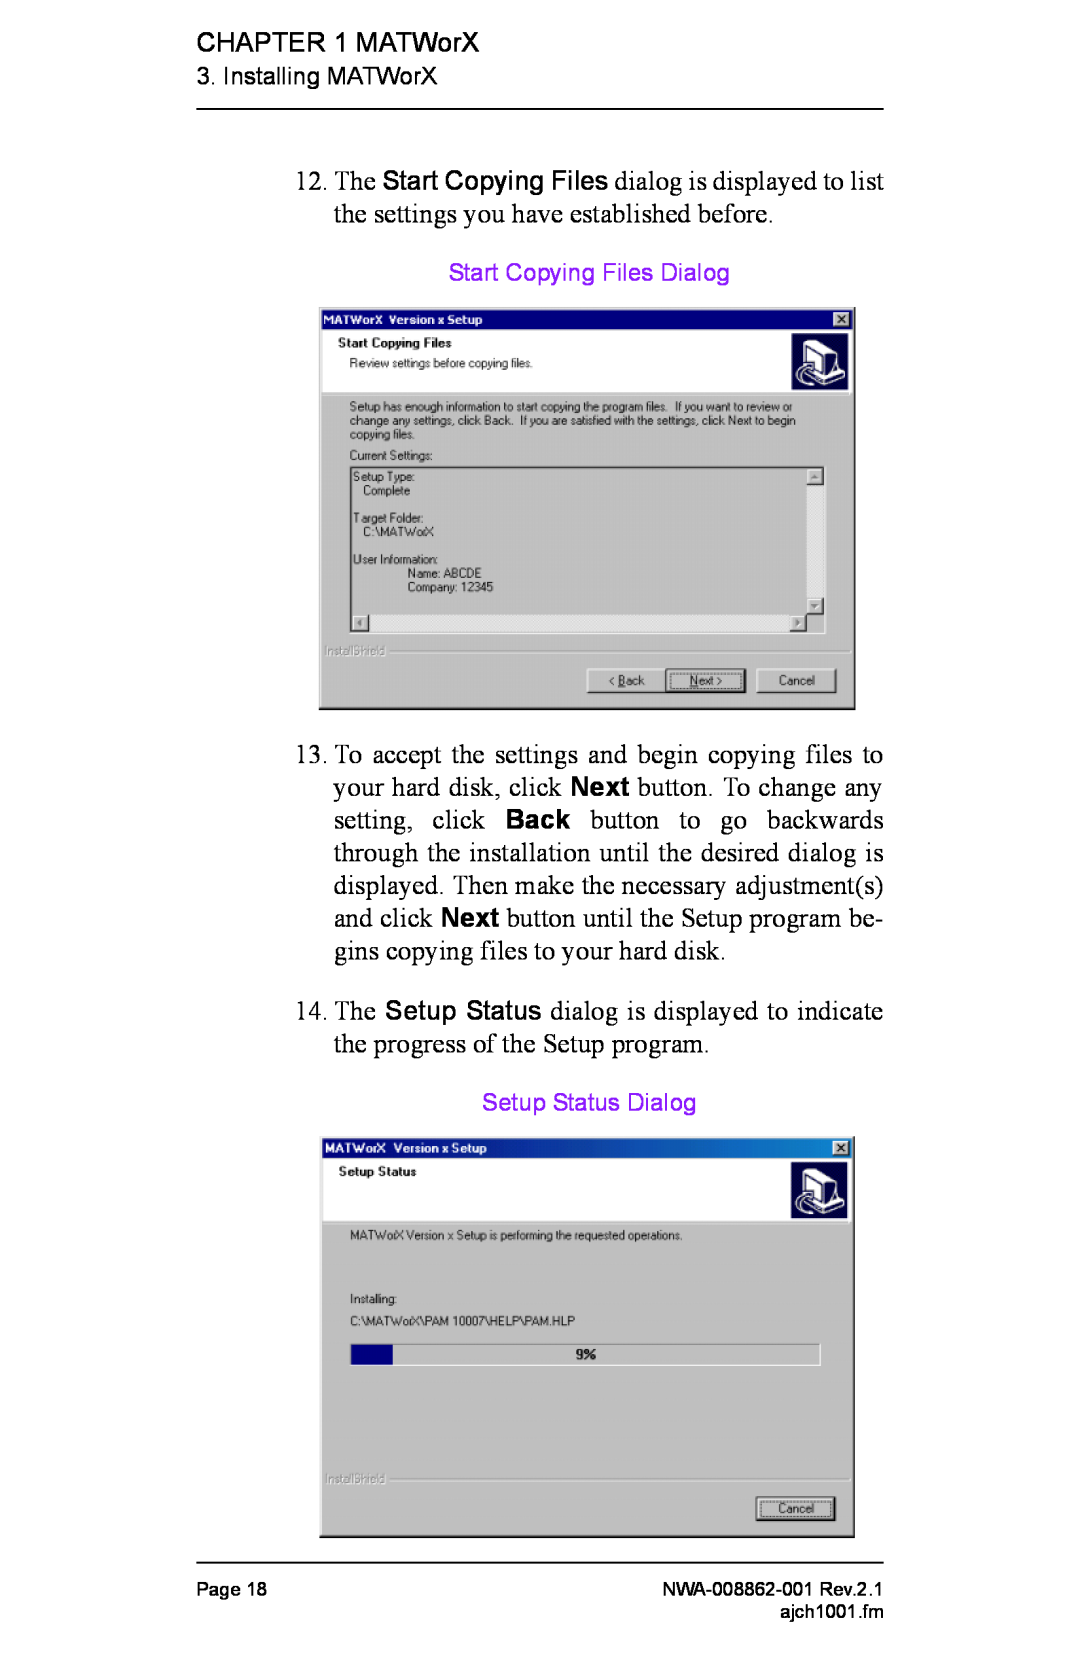 NEC NWA-008862-001 manual Start Copying Files Dialog, Setup Status Dialog 